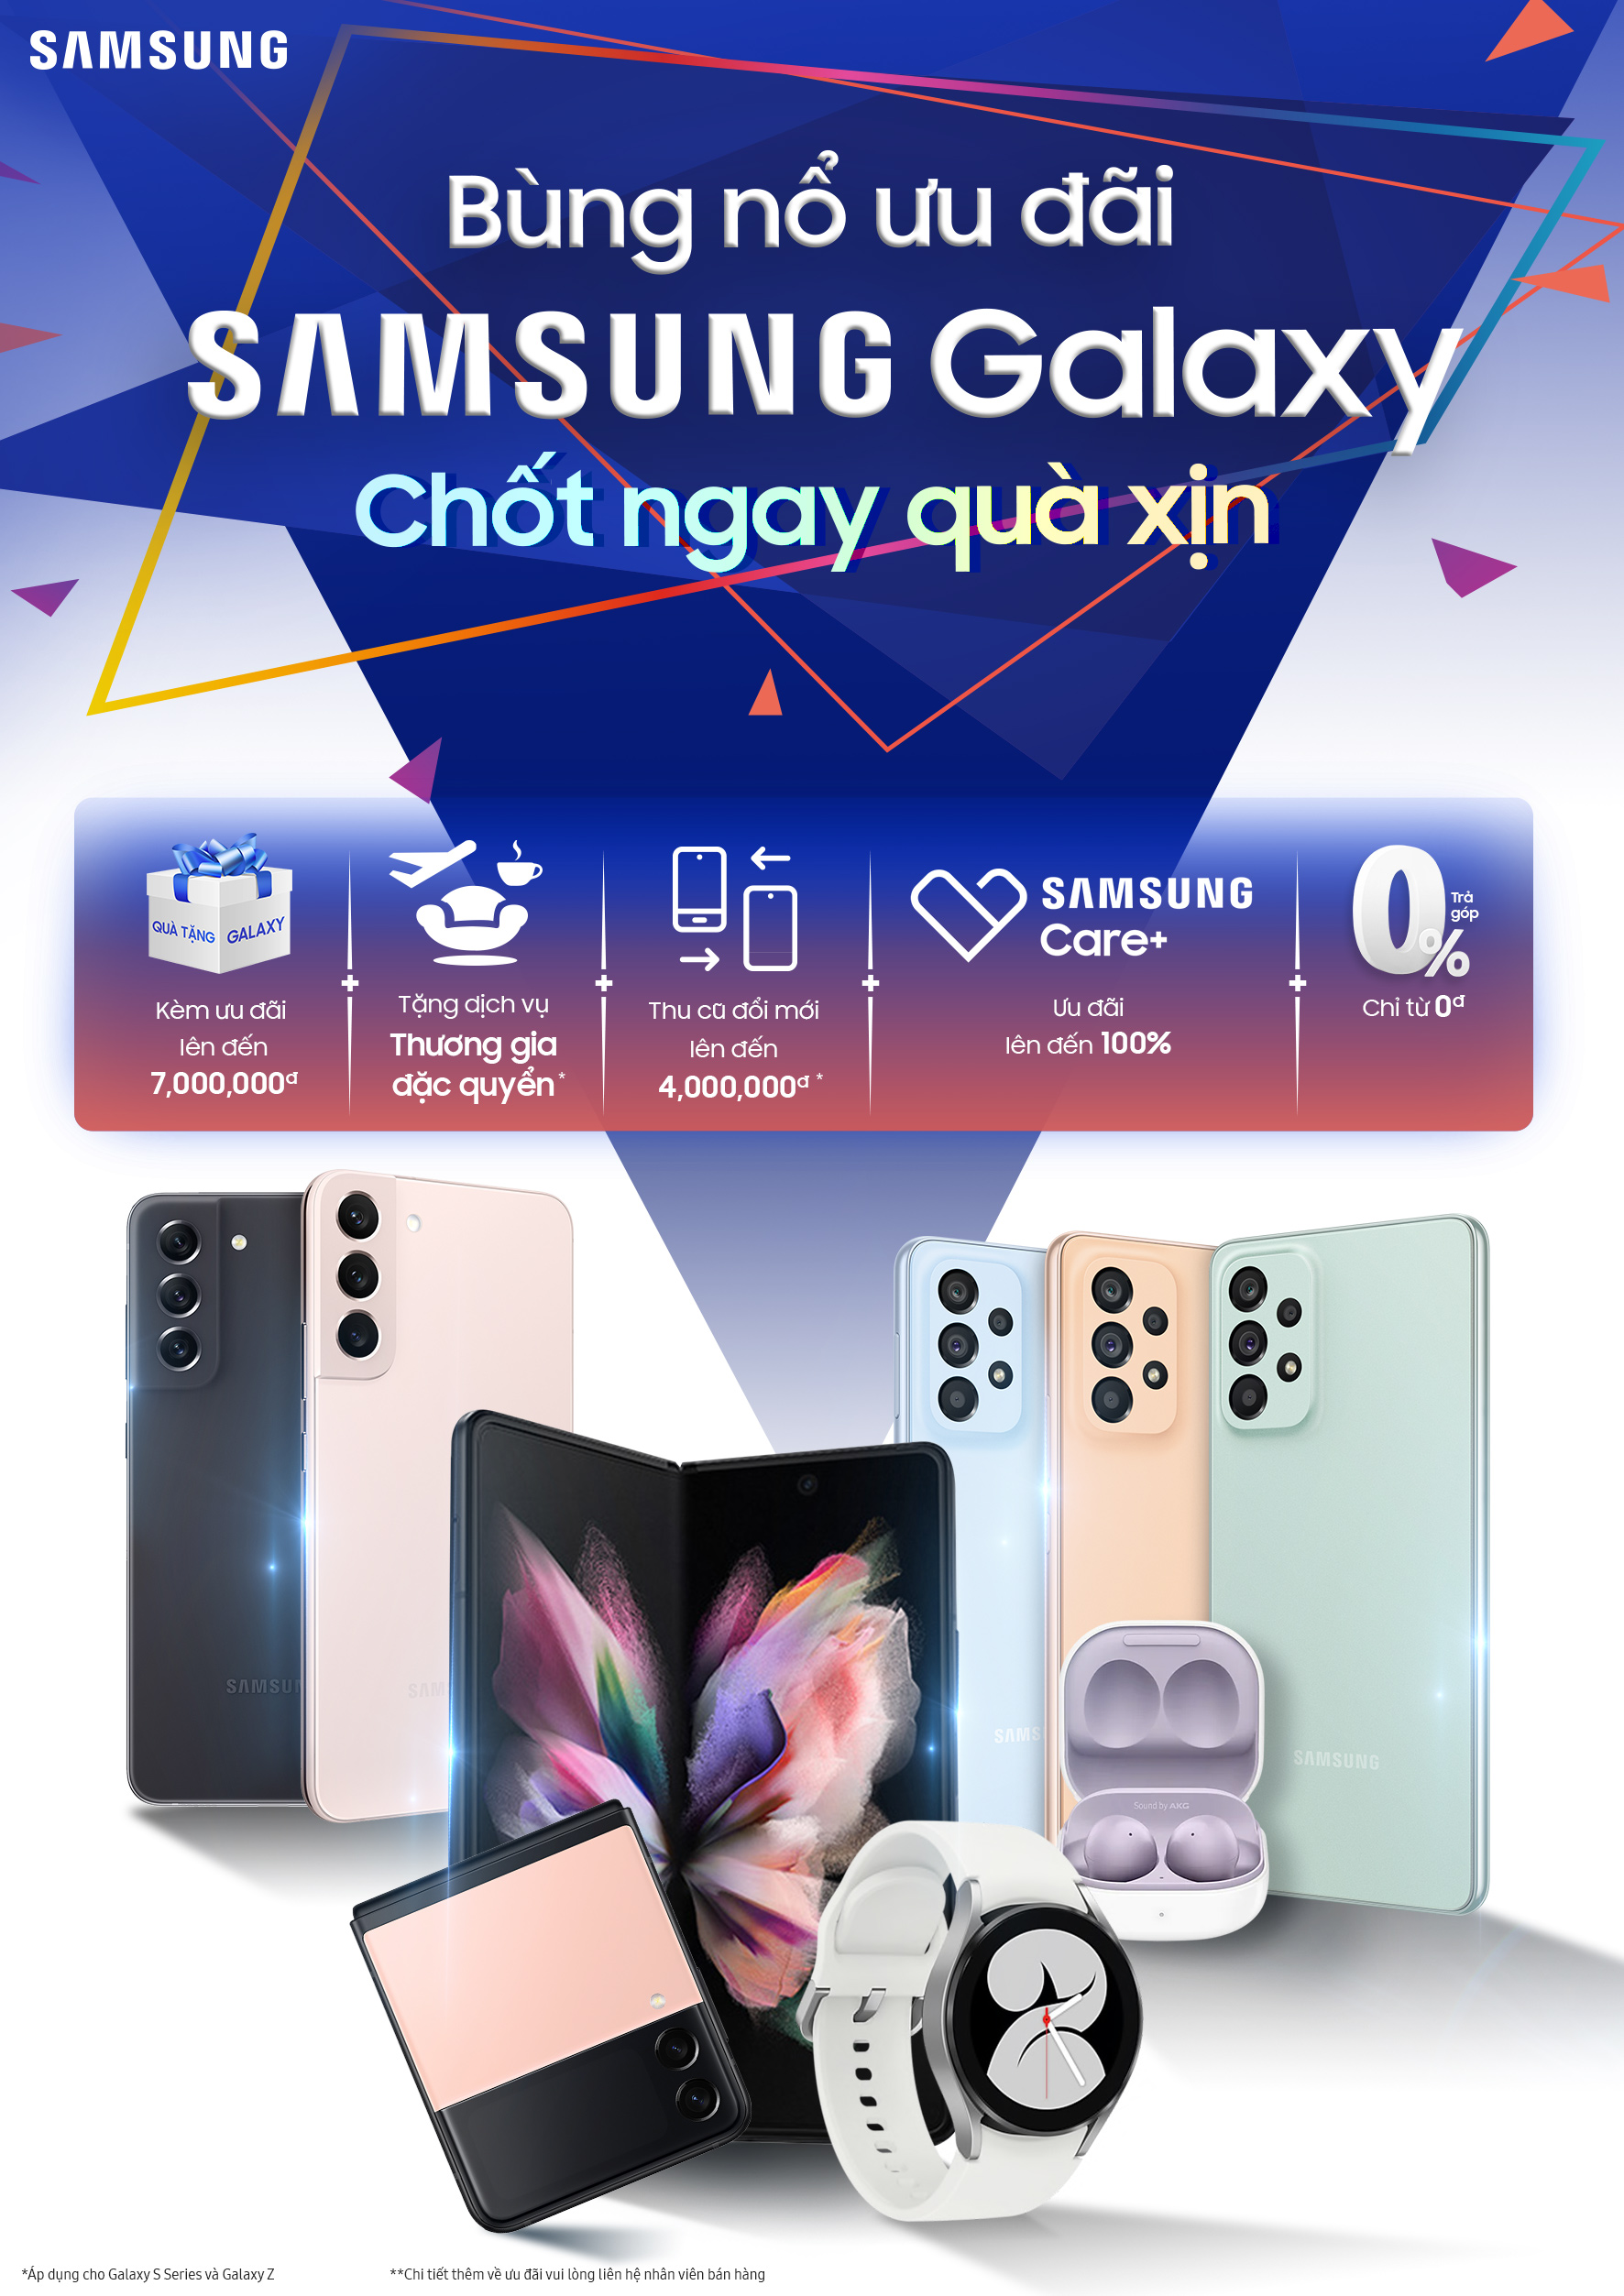 “Bùng nổ ưu đãi - Chốt ngay quà xịn” của Samsung với ưu đãi lên đến 7 triệu đồng